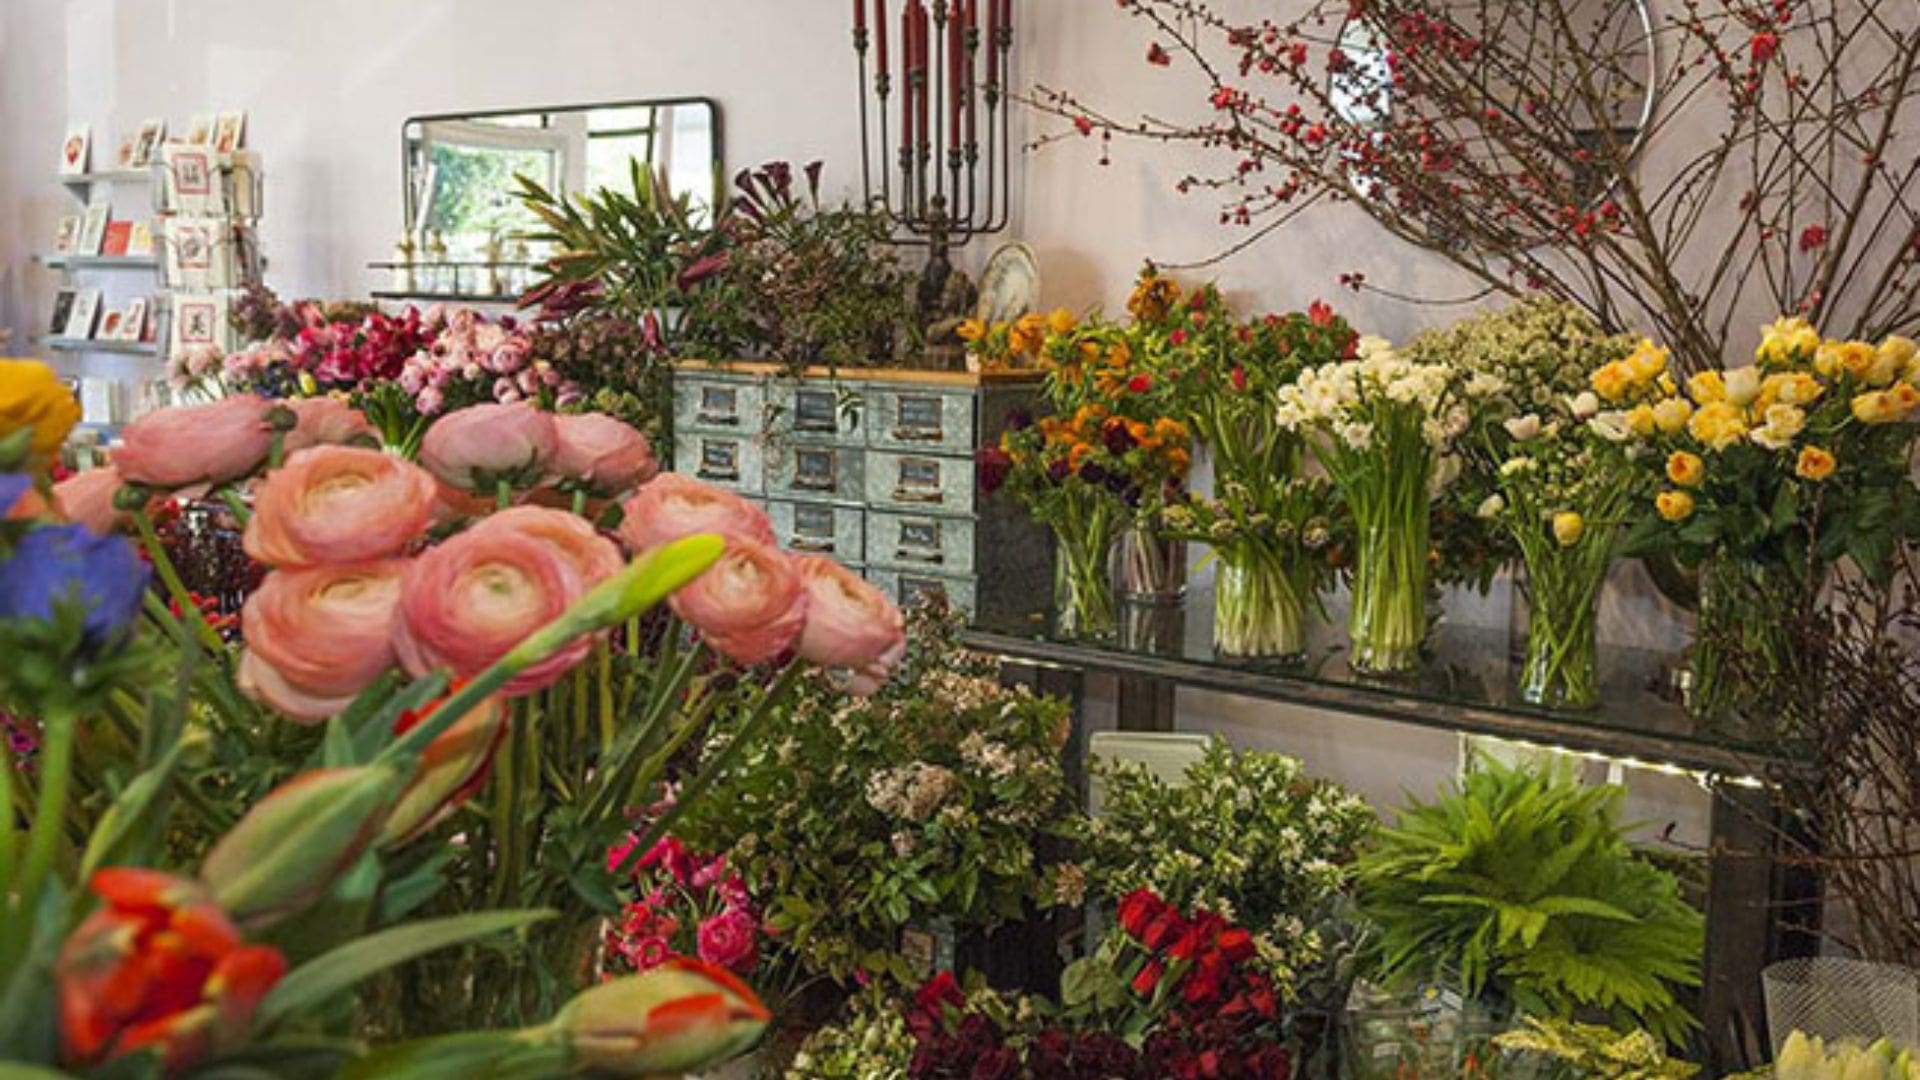 Cửa hàng hoa tươi Bách Thảo Hoa Đà Nẵng 